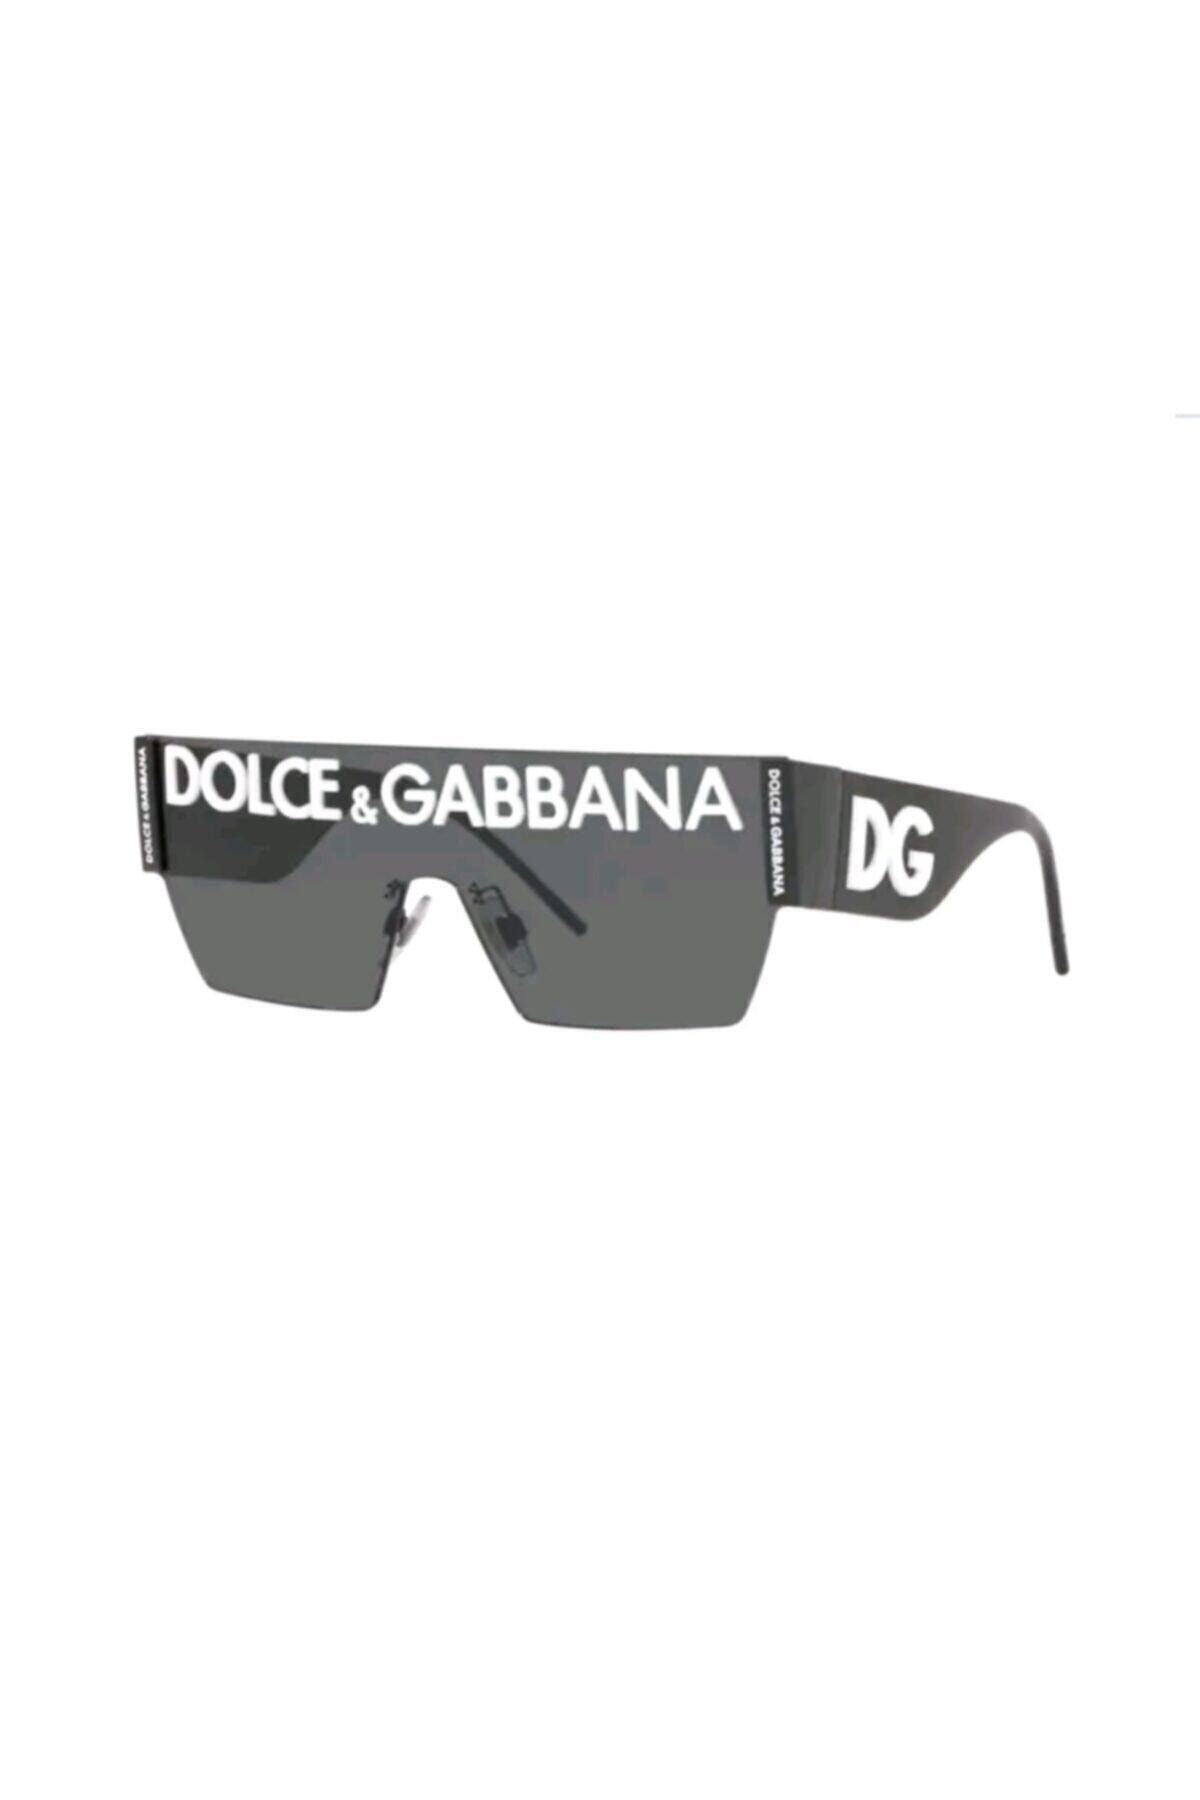 Dolce&Gabbana 2233 01/87 Unısex Güneş Gözlüğü